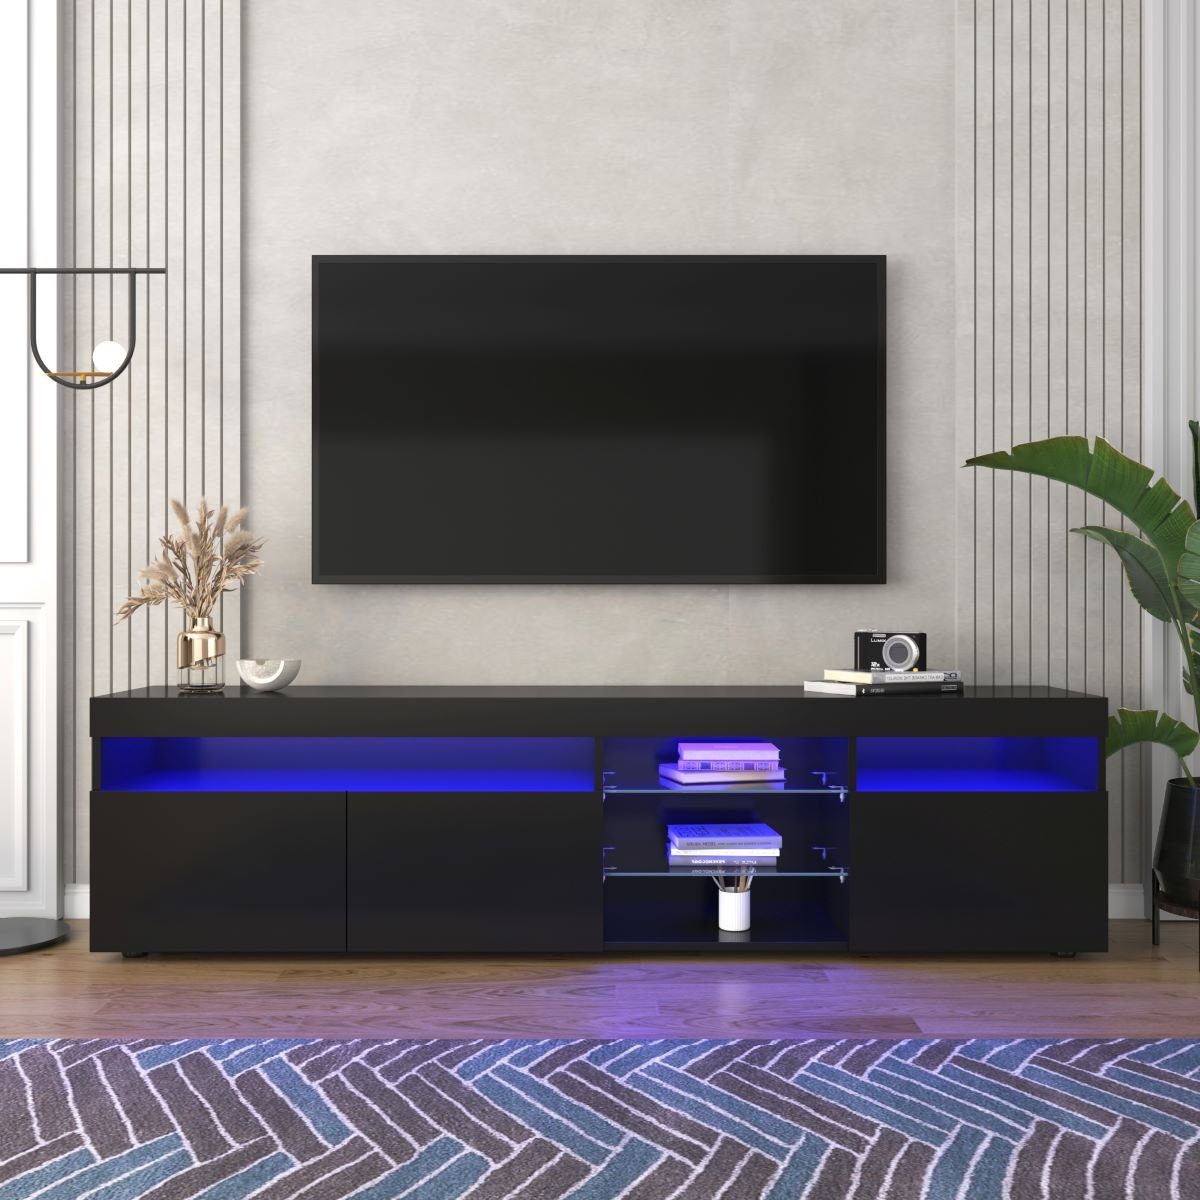 Fangqi TV-Schrank 180x35x45cm TV-Schrank, mit vierfarbigen LED-Leuchten,8 Stauräume (maximal belastbar 30kg) Schwarz